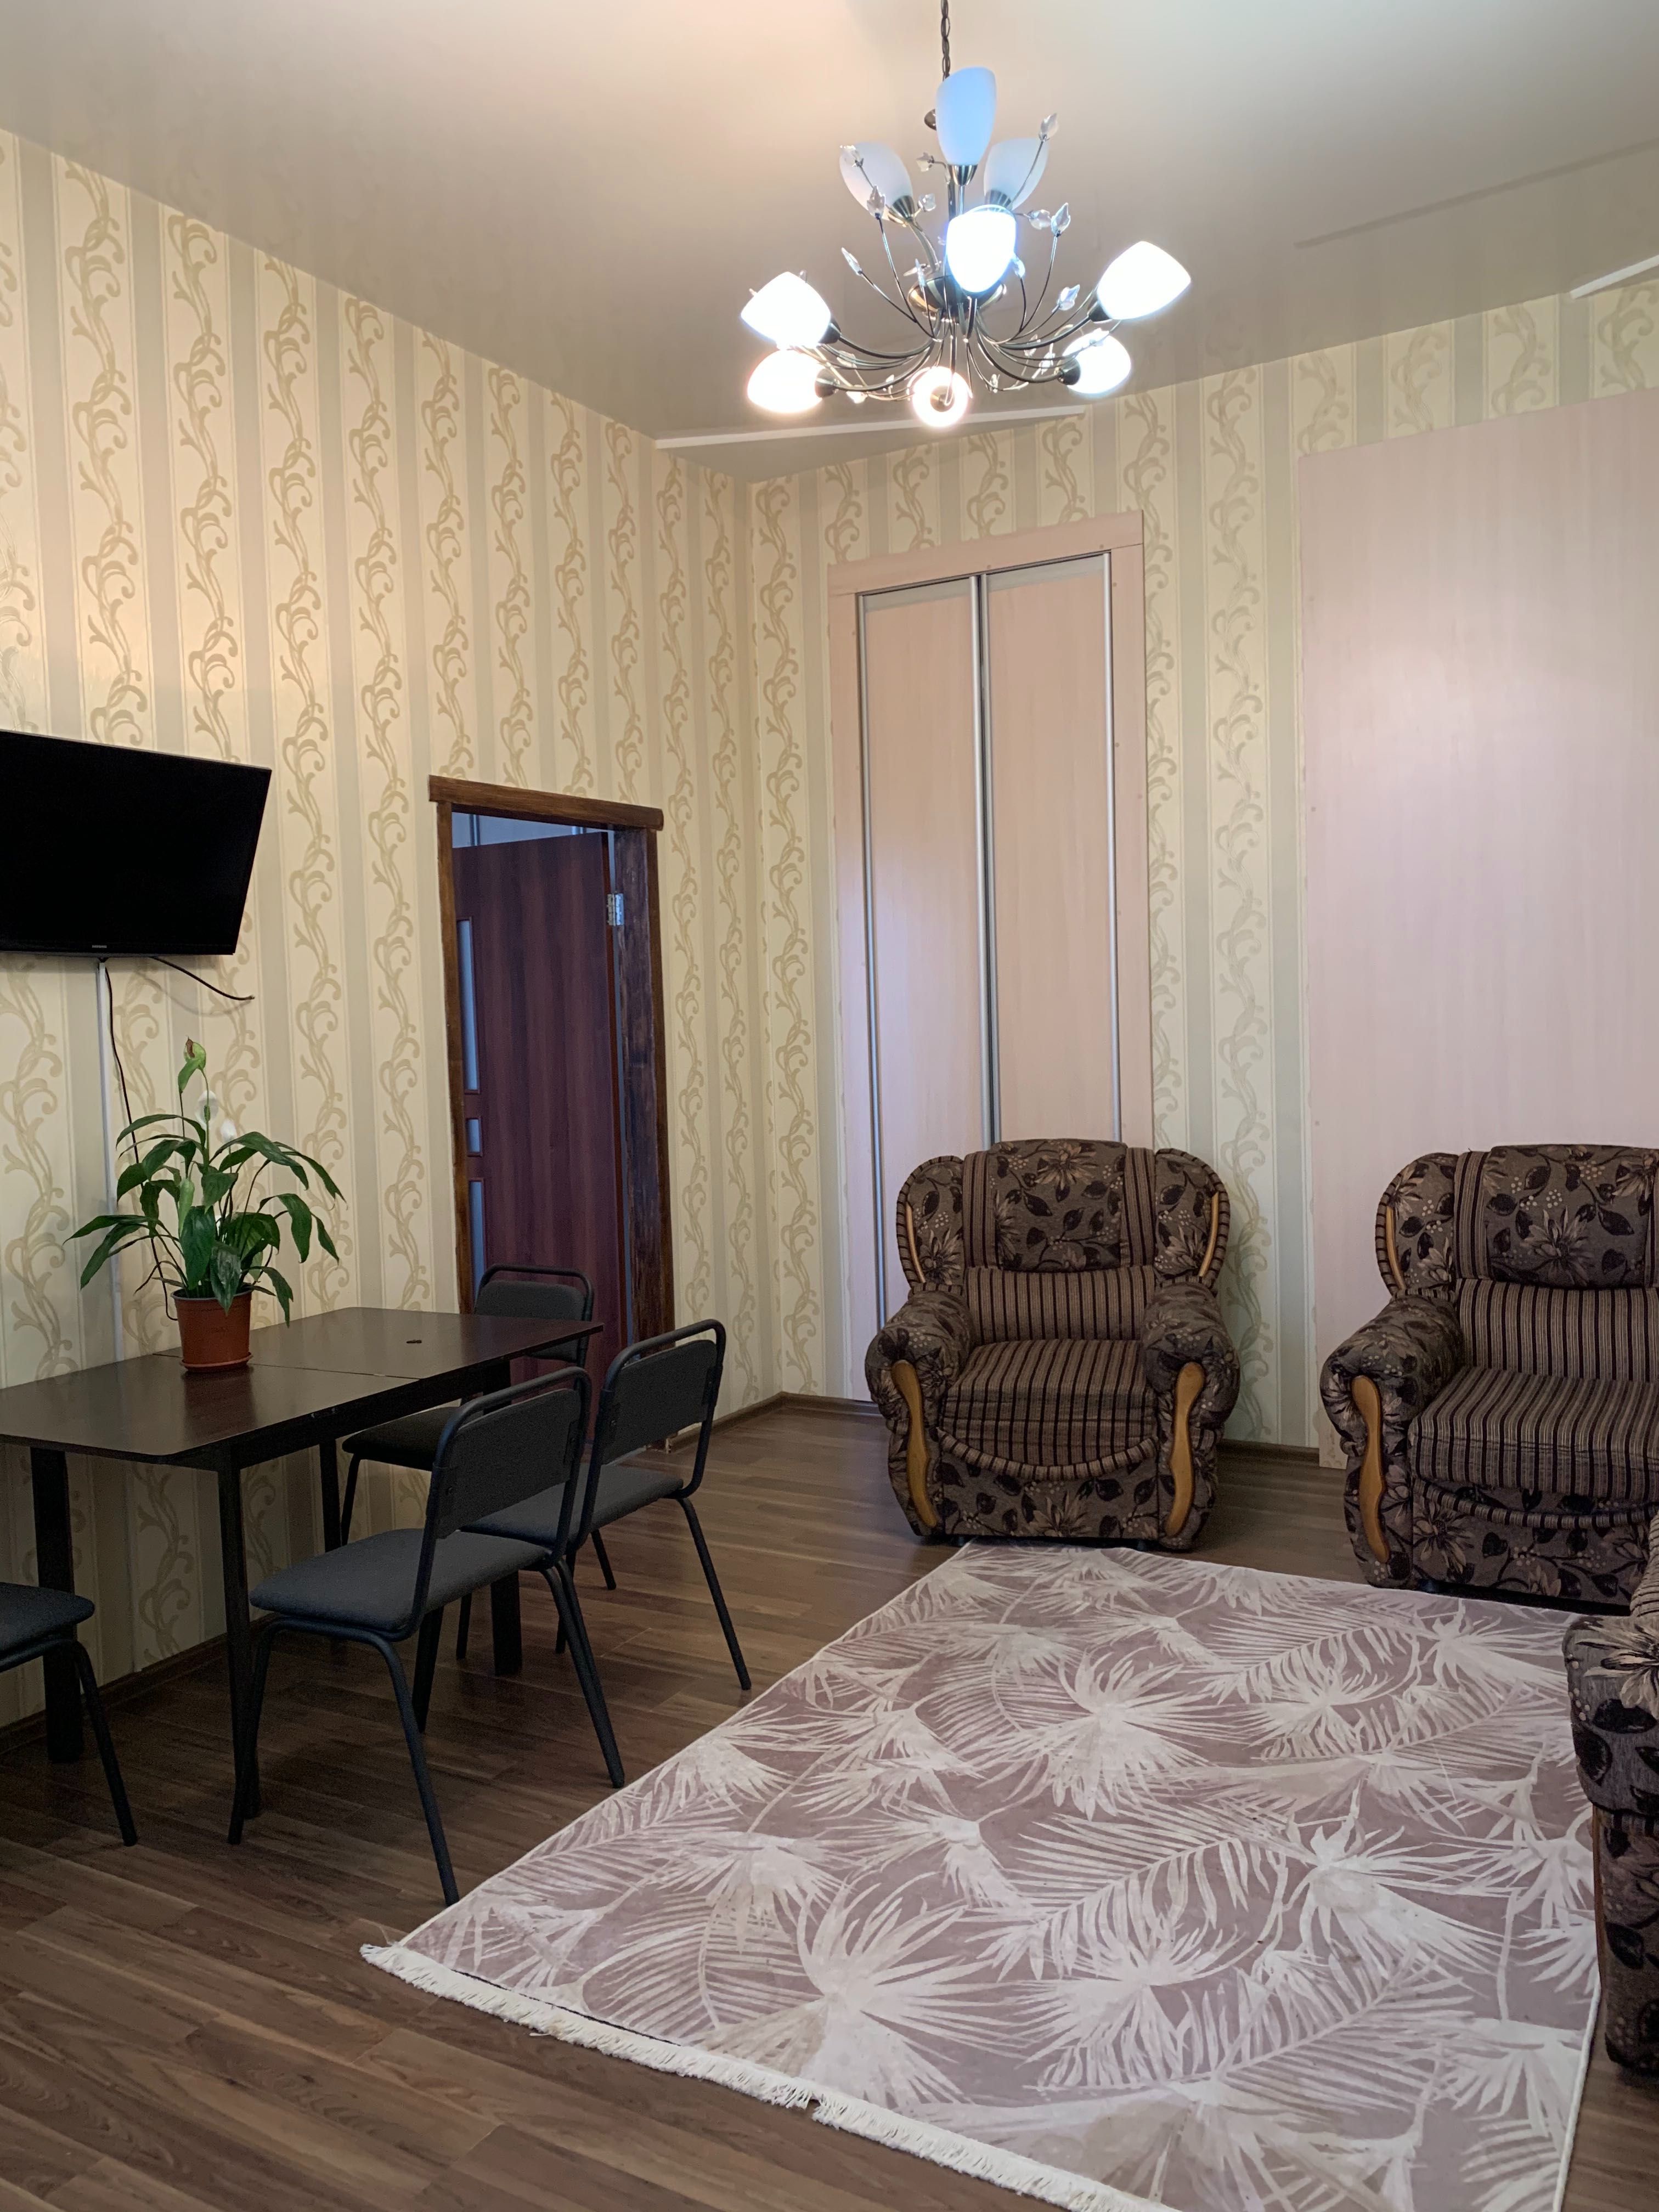 Аренда 3-х комнатной квартиры в Центре по улице Чернышевская